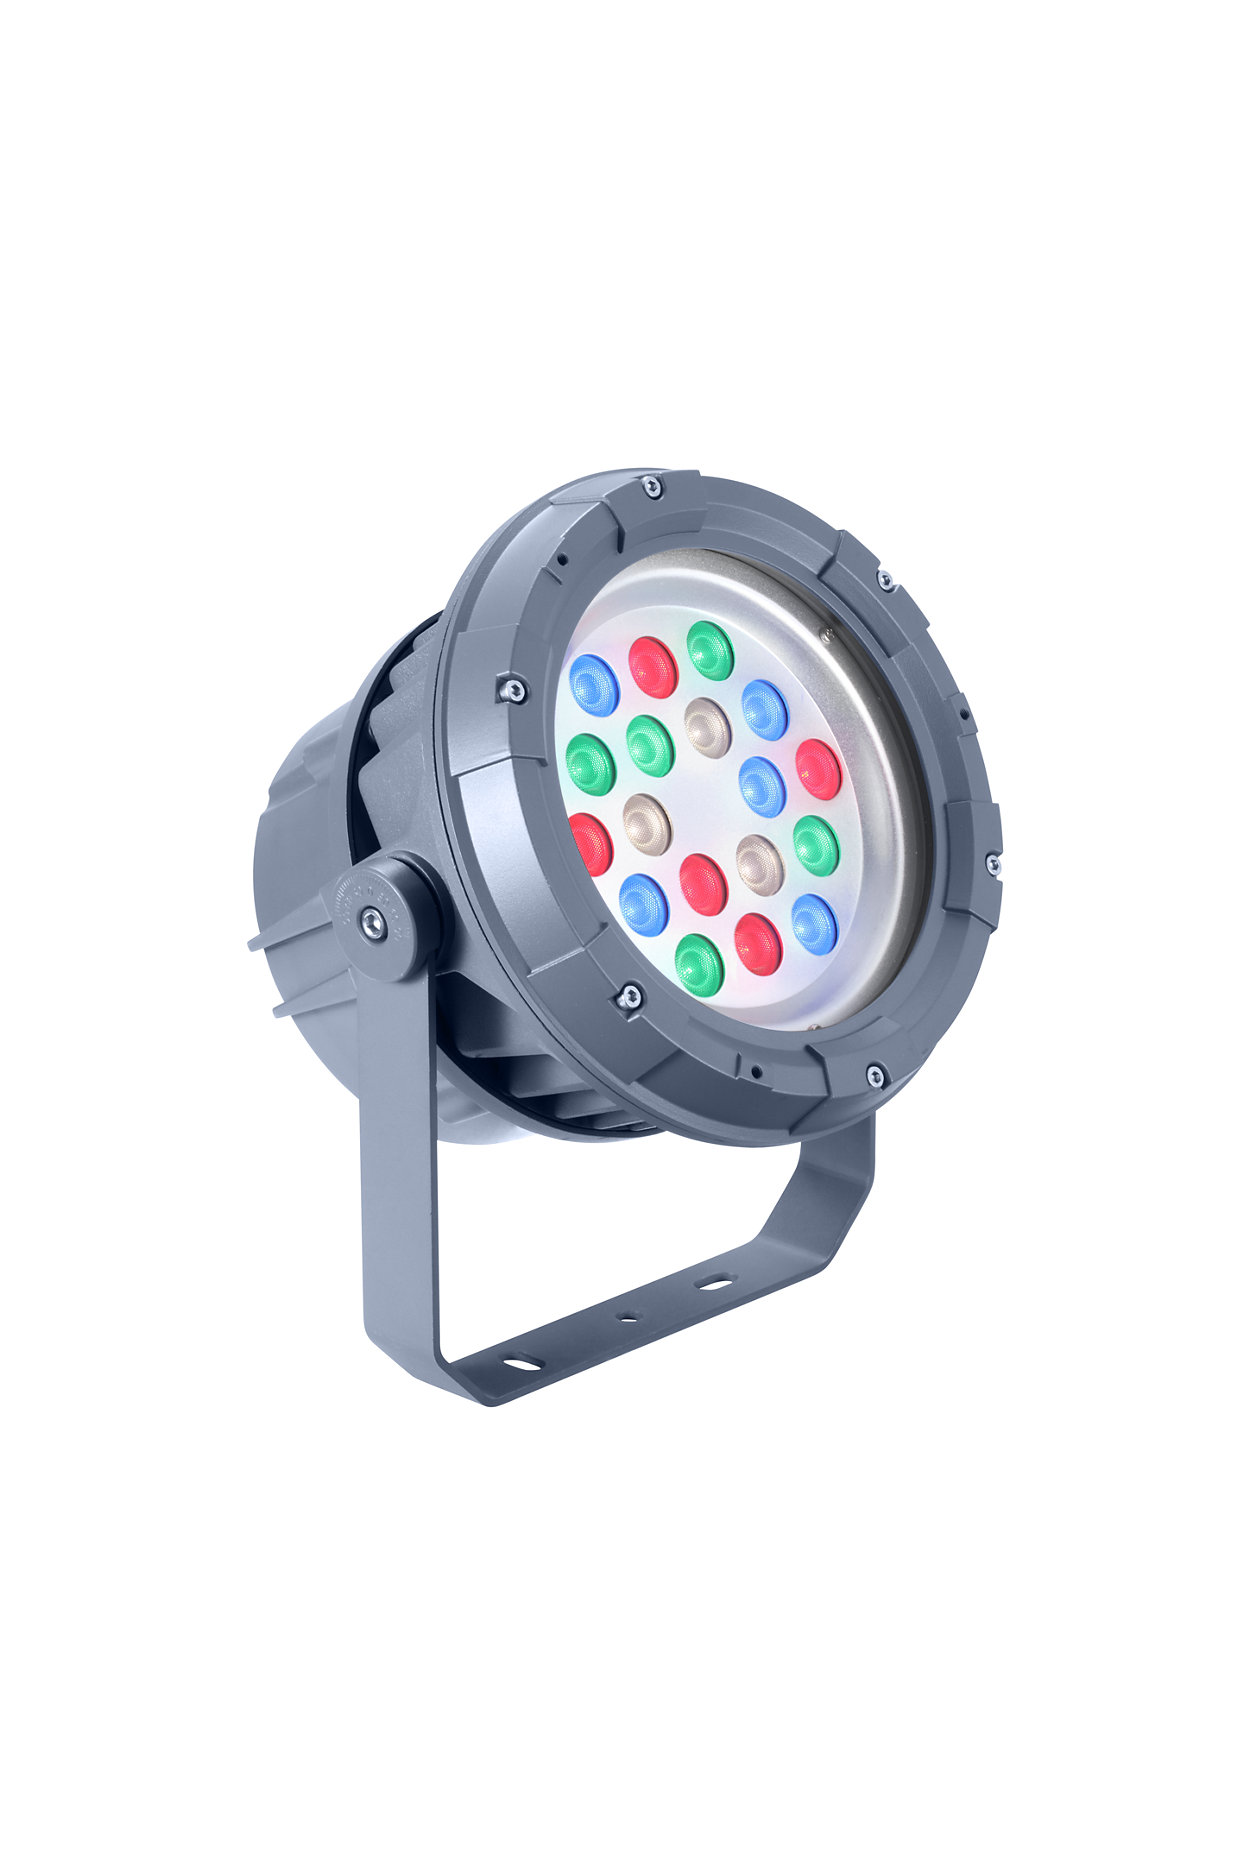 Proyector de LED arquitectónico para iluminación fija o dinámica.